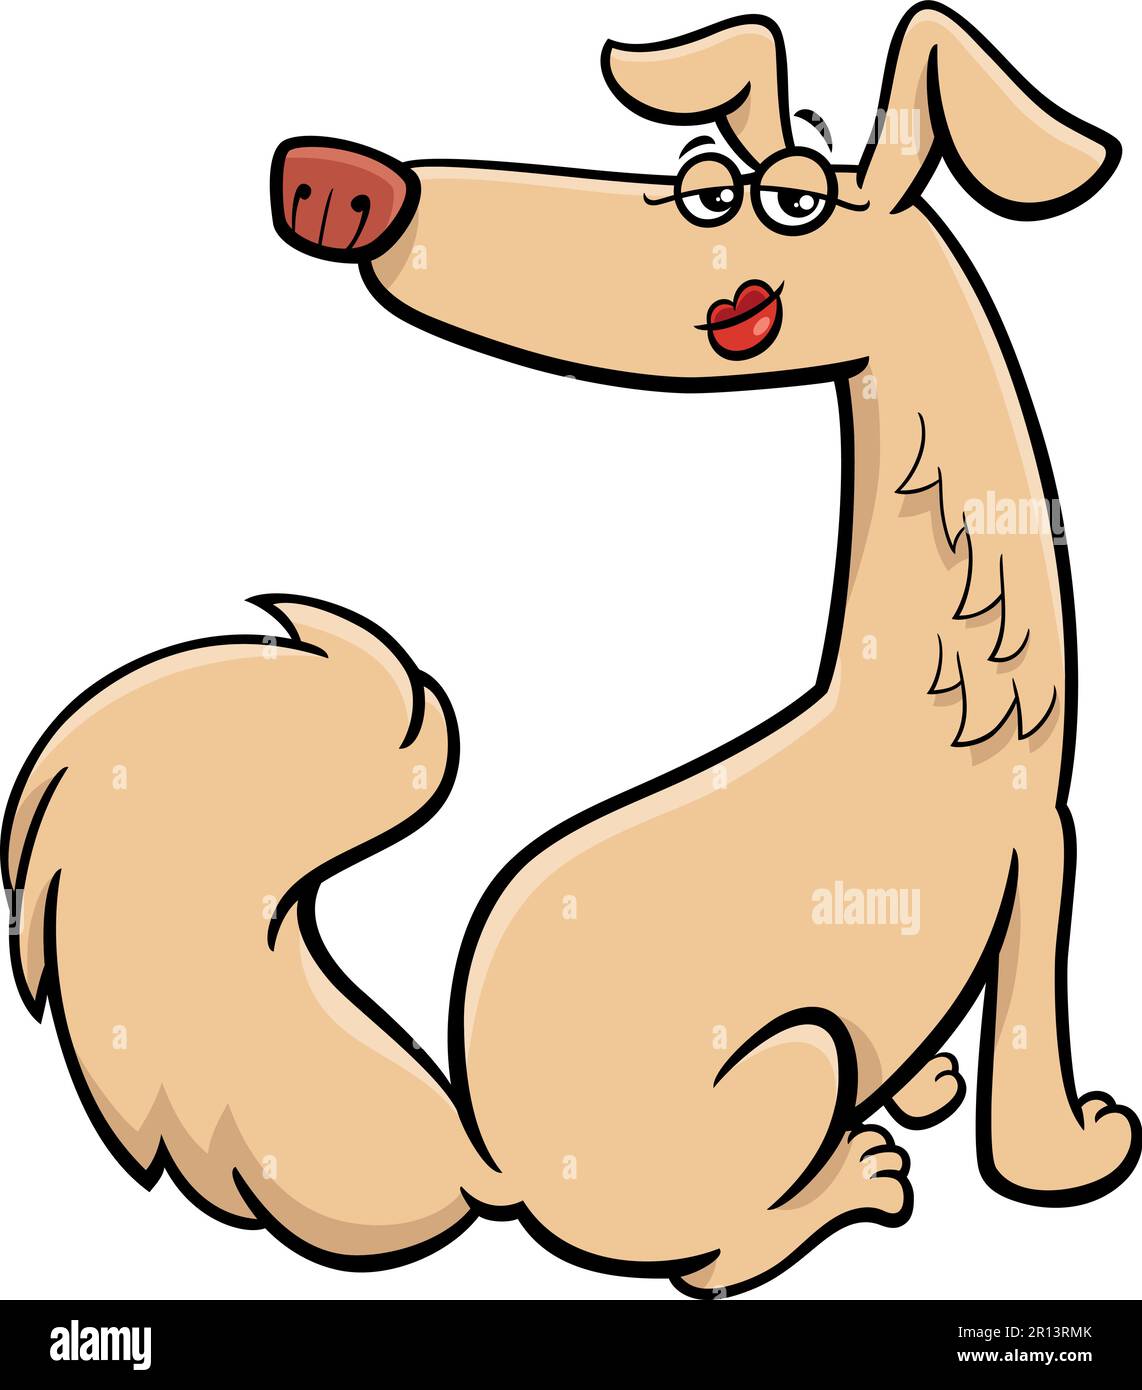 Illustrazione del cartone animato di animale comico femminile divertente del cane Illustrazione Vettoriale